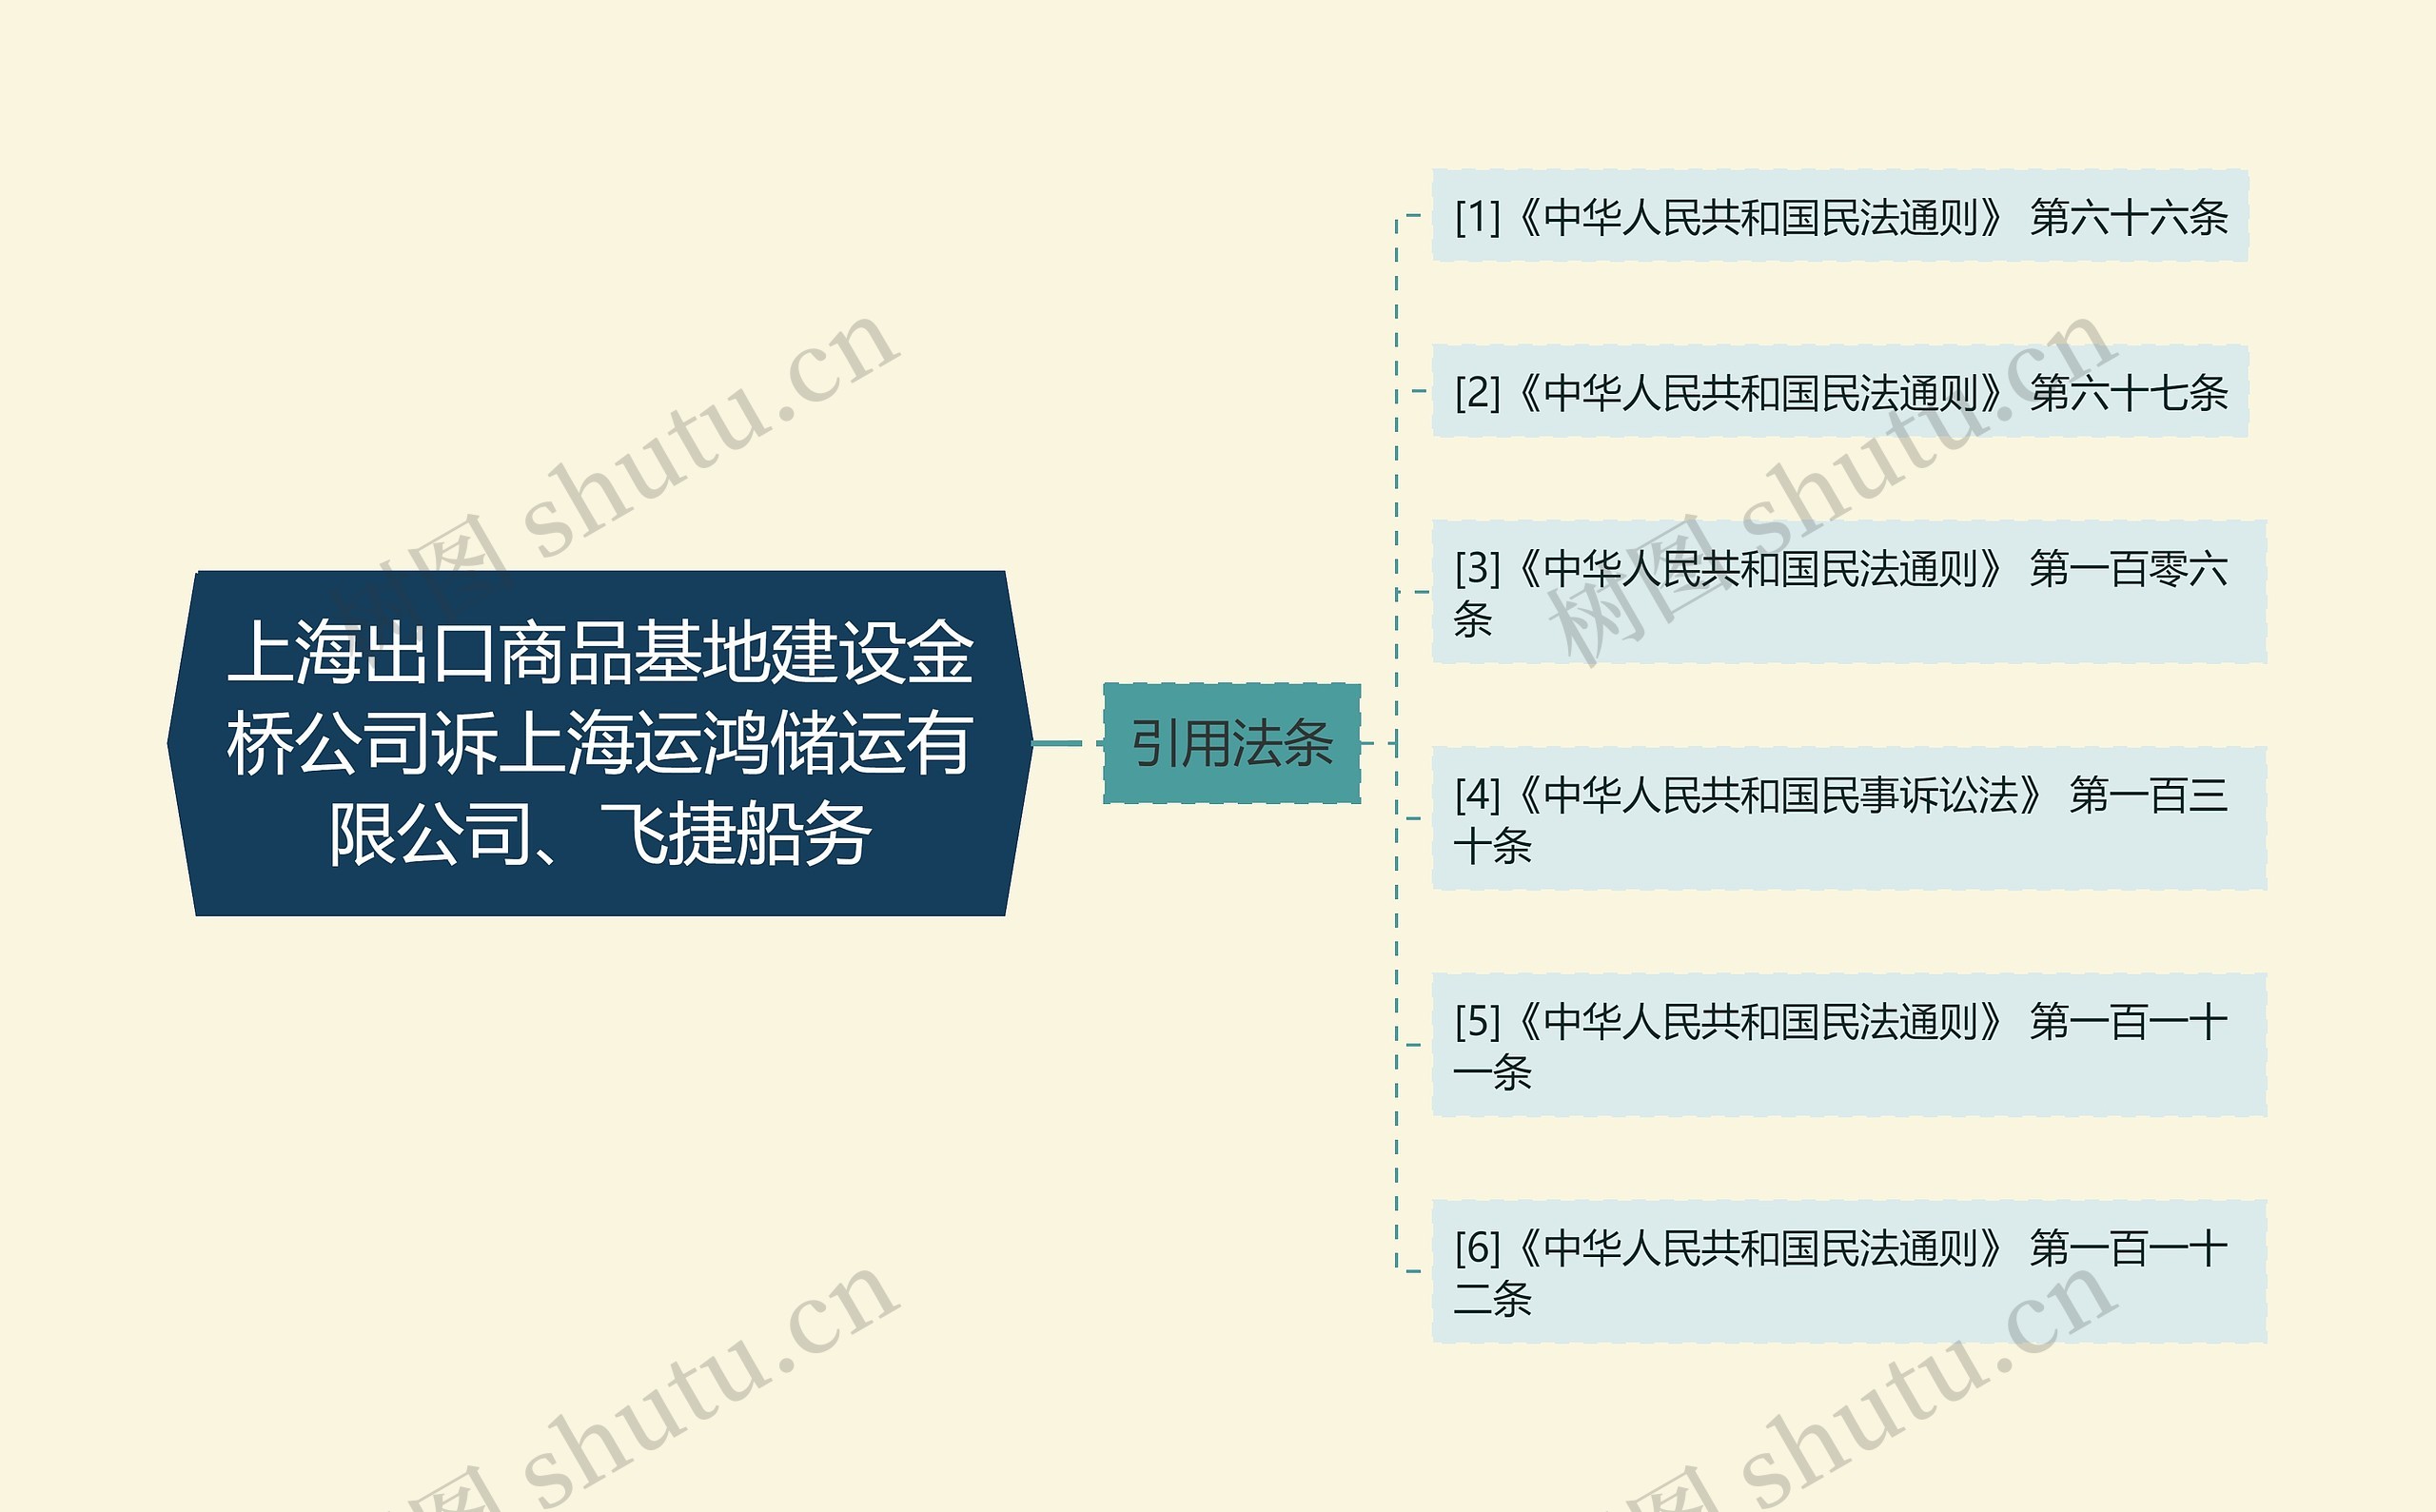 上海出口商品基地建设金桥公司诉上海运鸿储运有限公司、飞捷船务思维导图